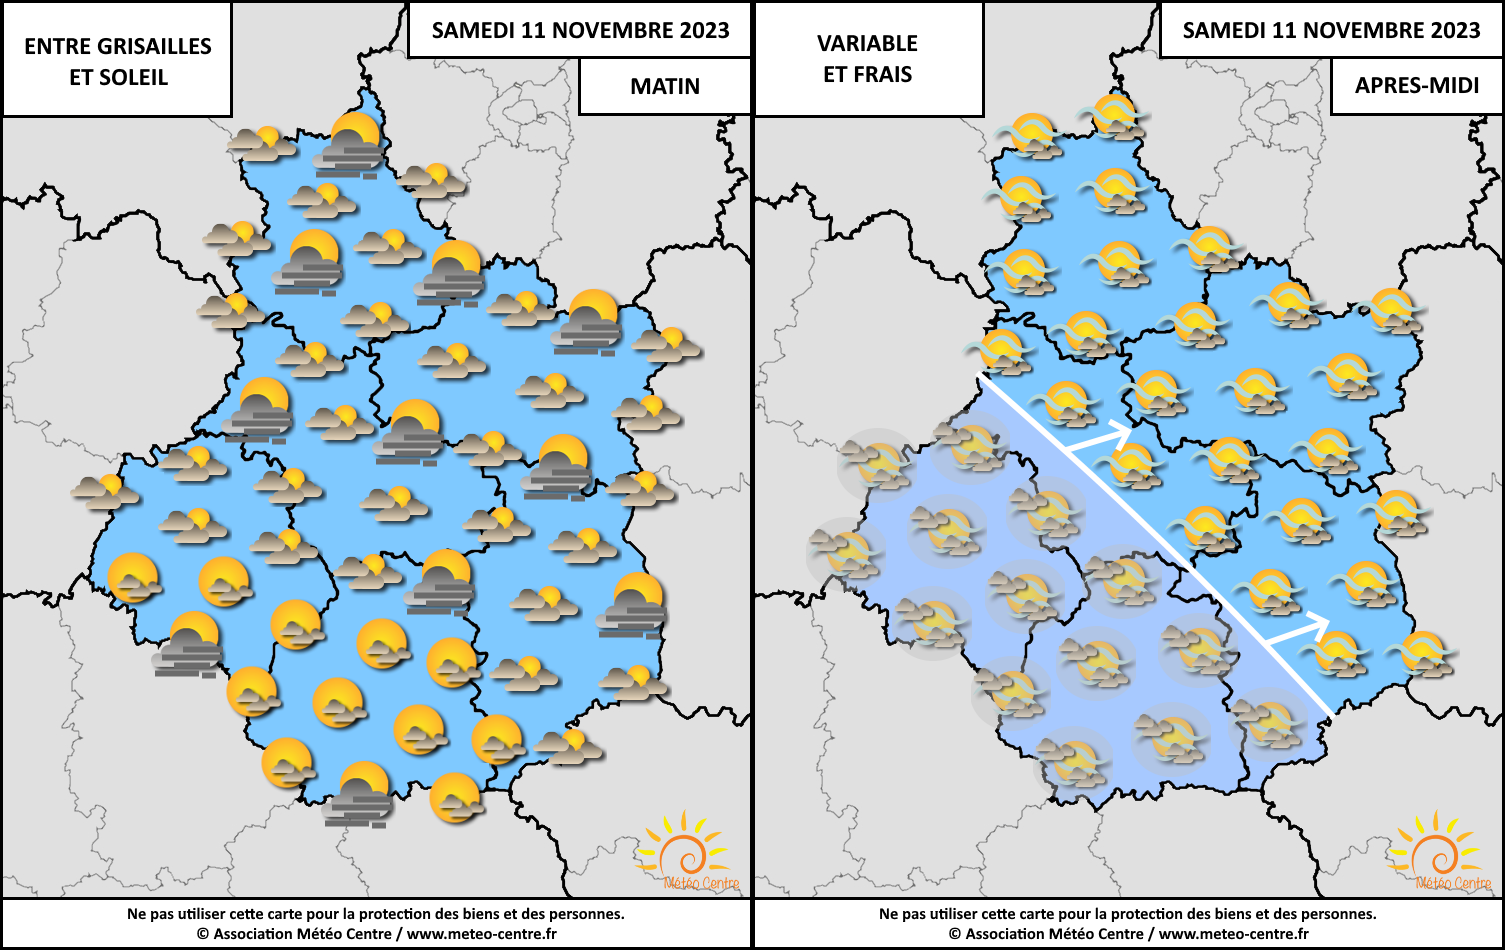 Conditions météo prévues entre la matinée et le milieu / la fin soirée du samedi 11 novembre 2023, sur le Centre - Val de Loire (copyright : Association Météo Centre).